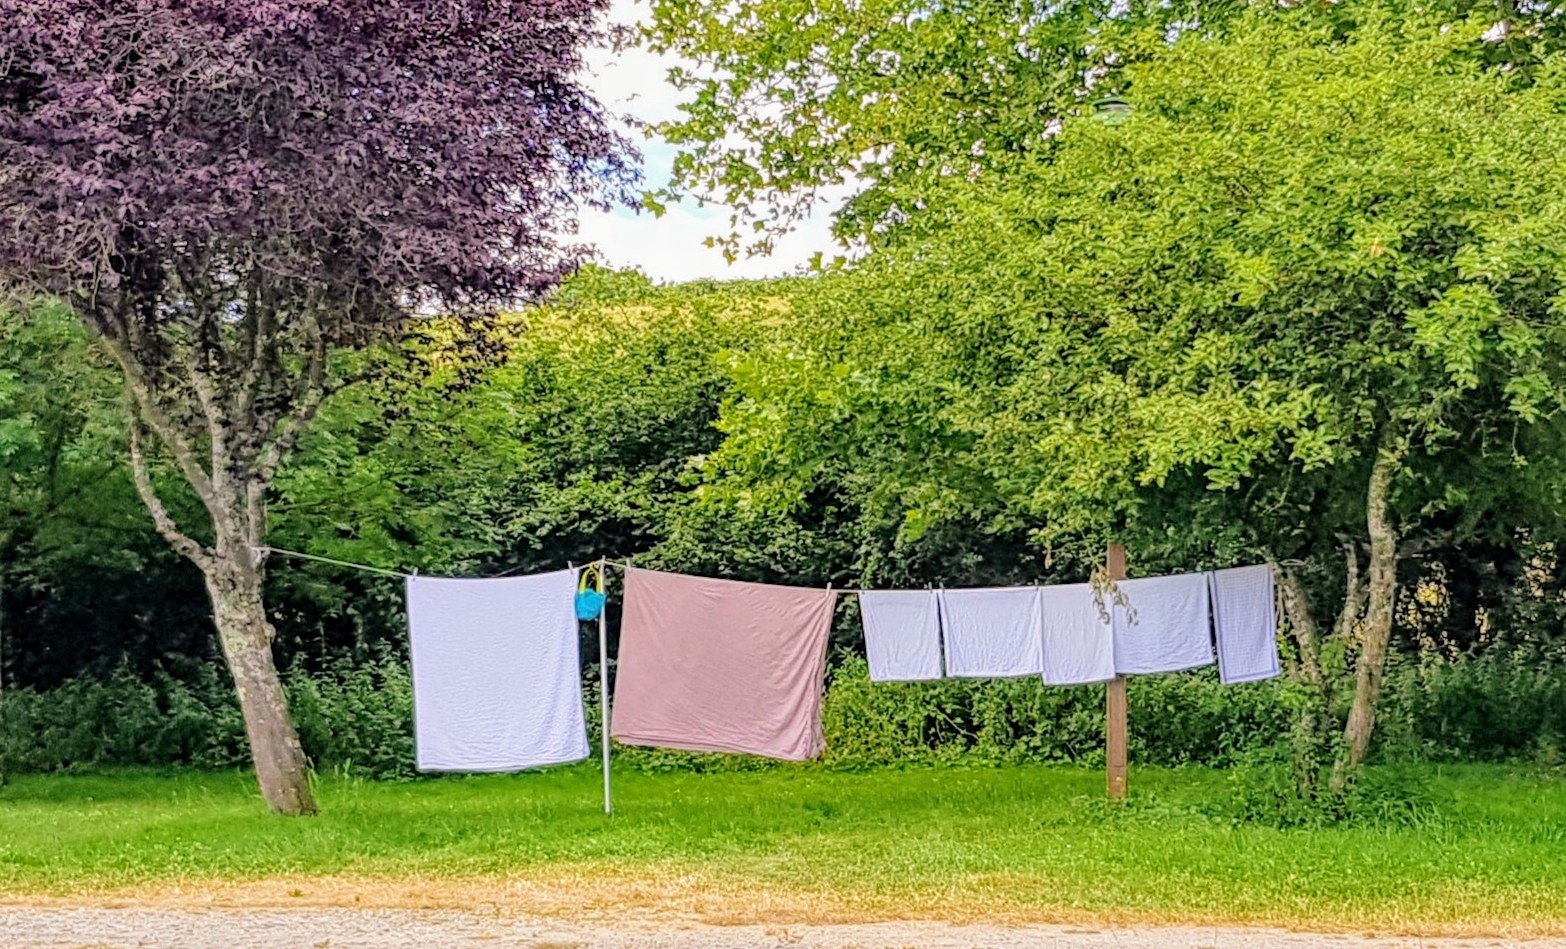 Heute Waschtag! Wäscheleine zwischen Bäumen, wie früher.